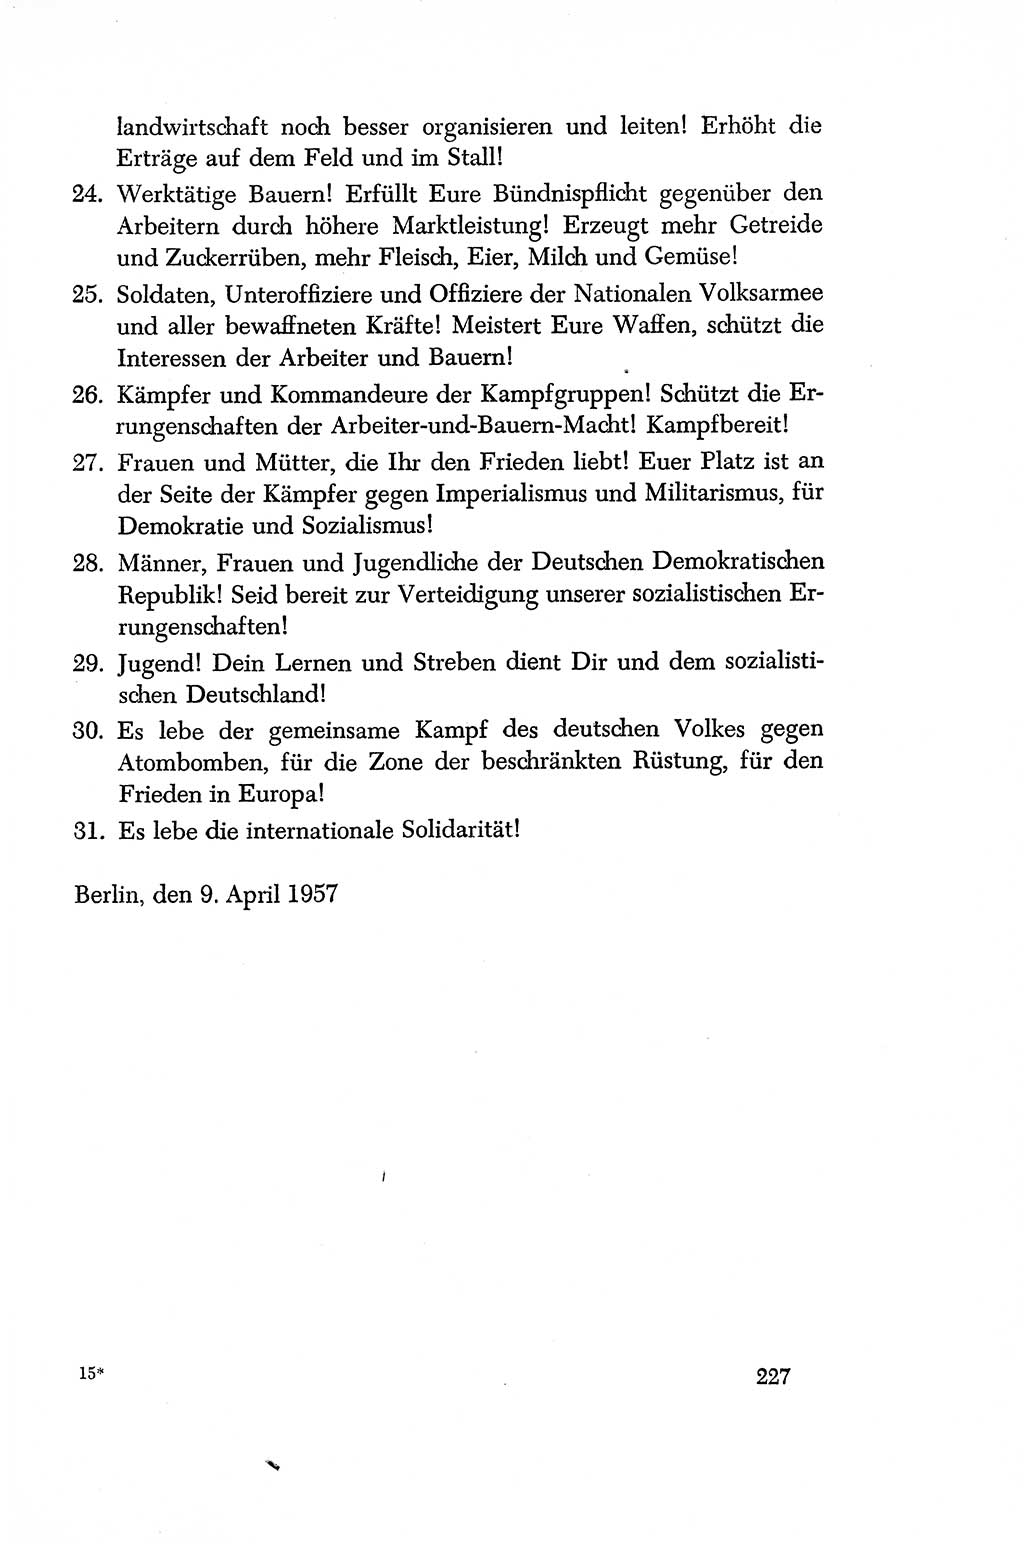 Dokumente der Sozialistischen Einheitspartei Deutschlands (SED) [Deutsche Demokratische Republik (DDR)] 1956-1957, Seite 227 (Dok. SED DDR 1956-1957, S. 227)